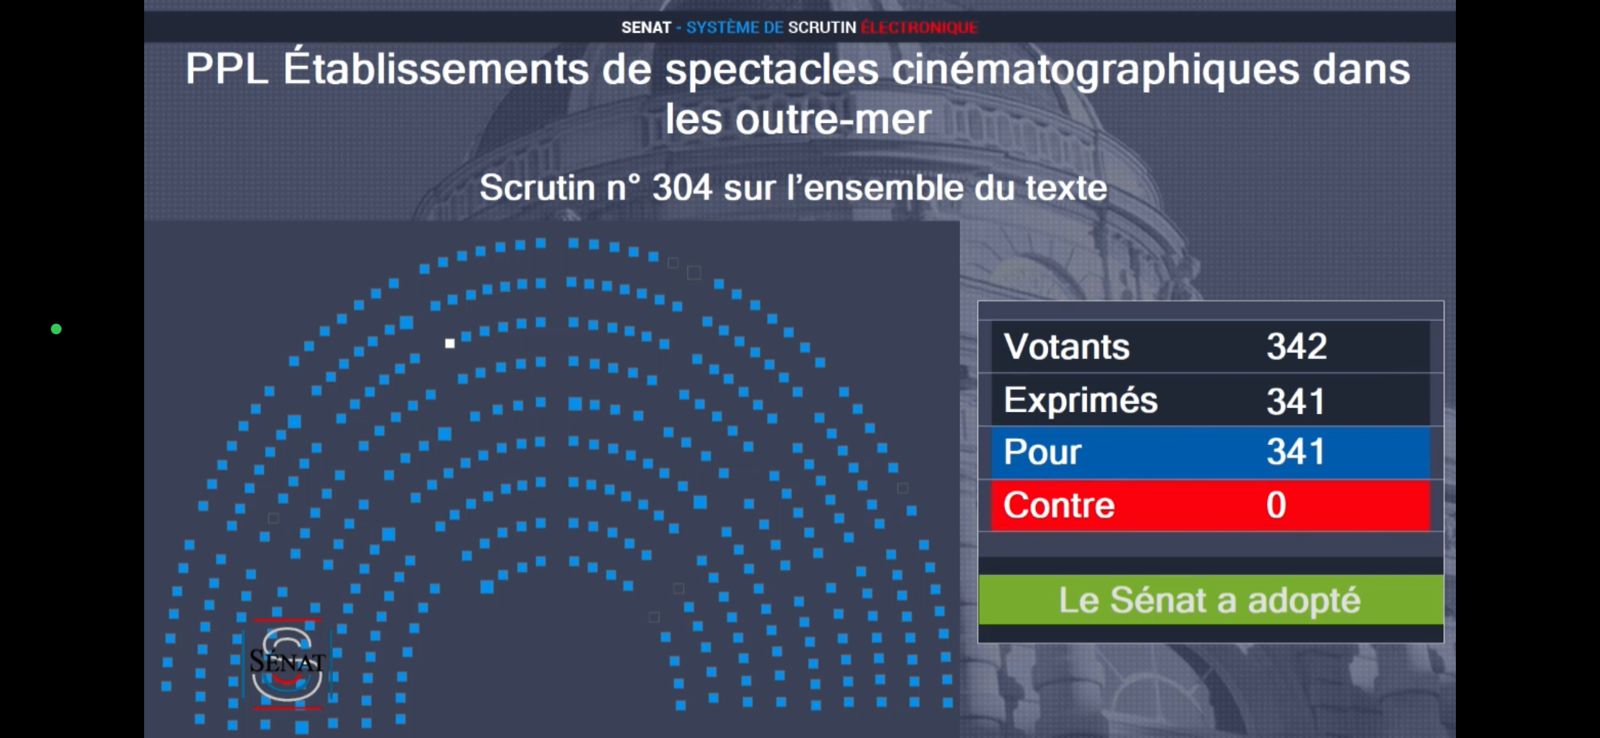     Cinémas d’Outre-Mer : la proposition de loi de Catherine Conconne adoptée

